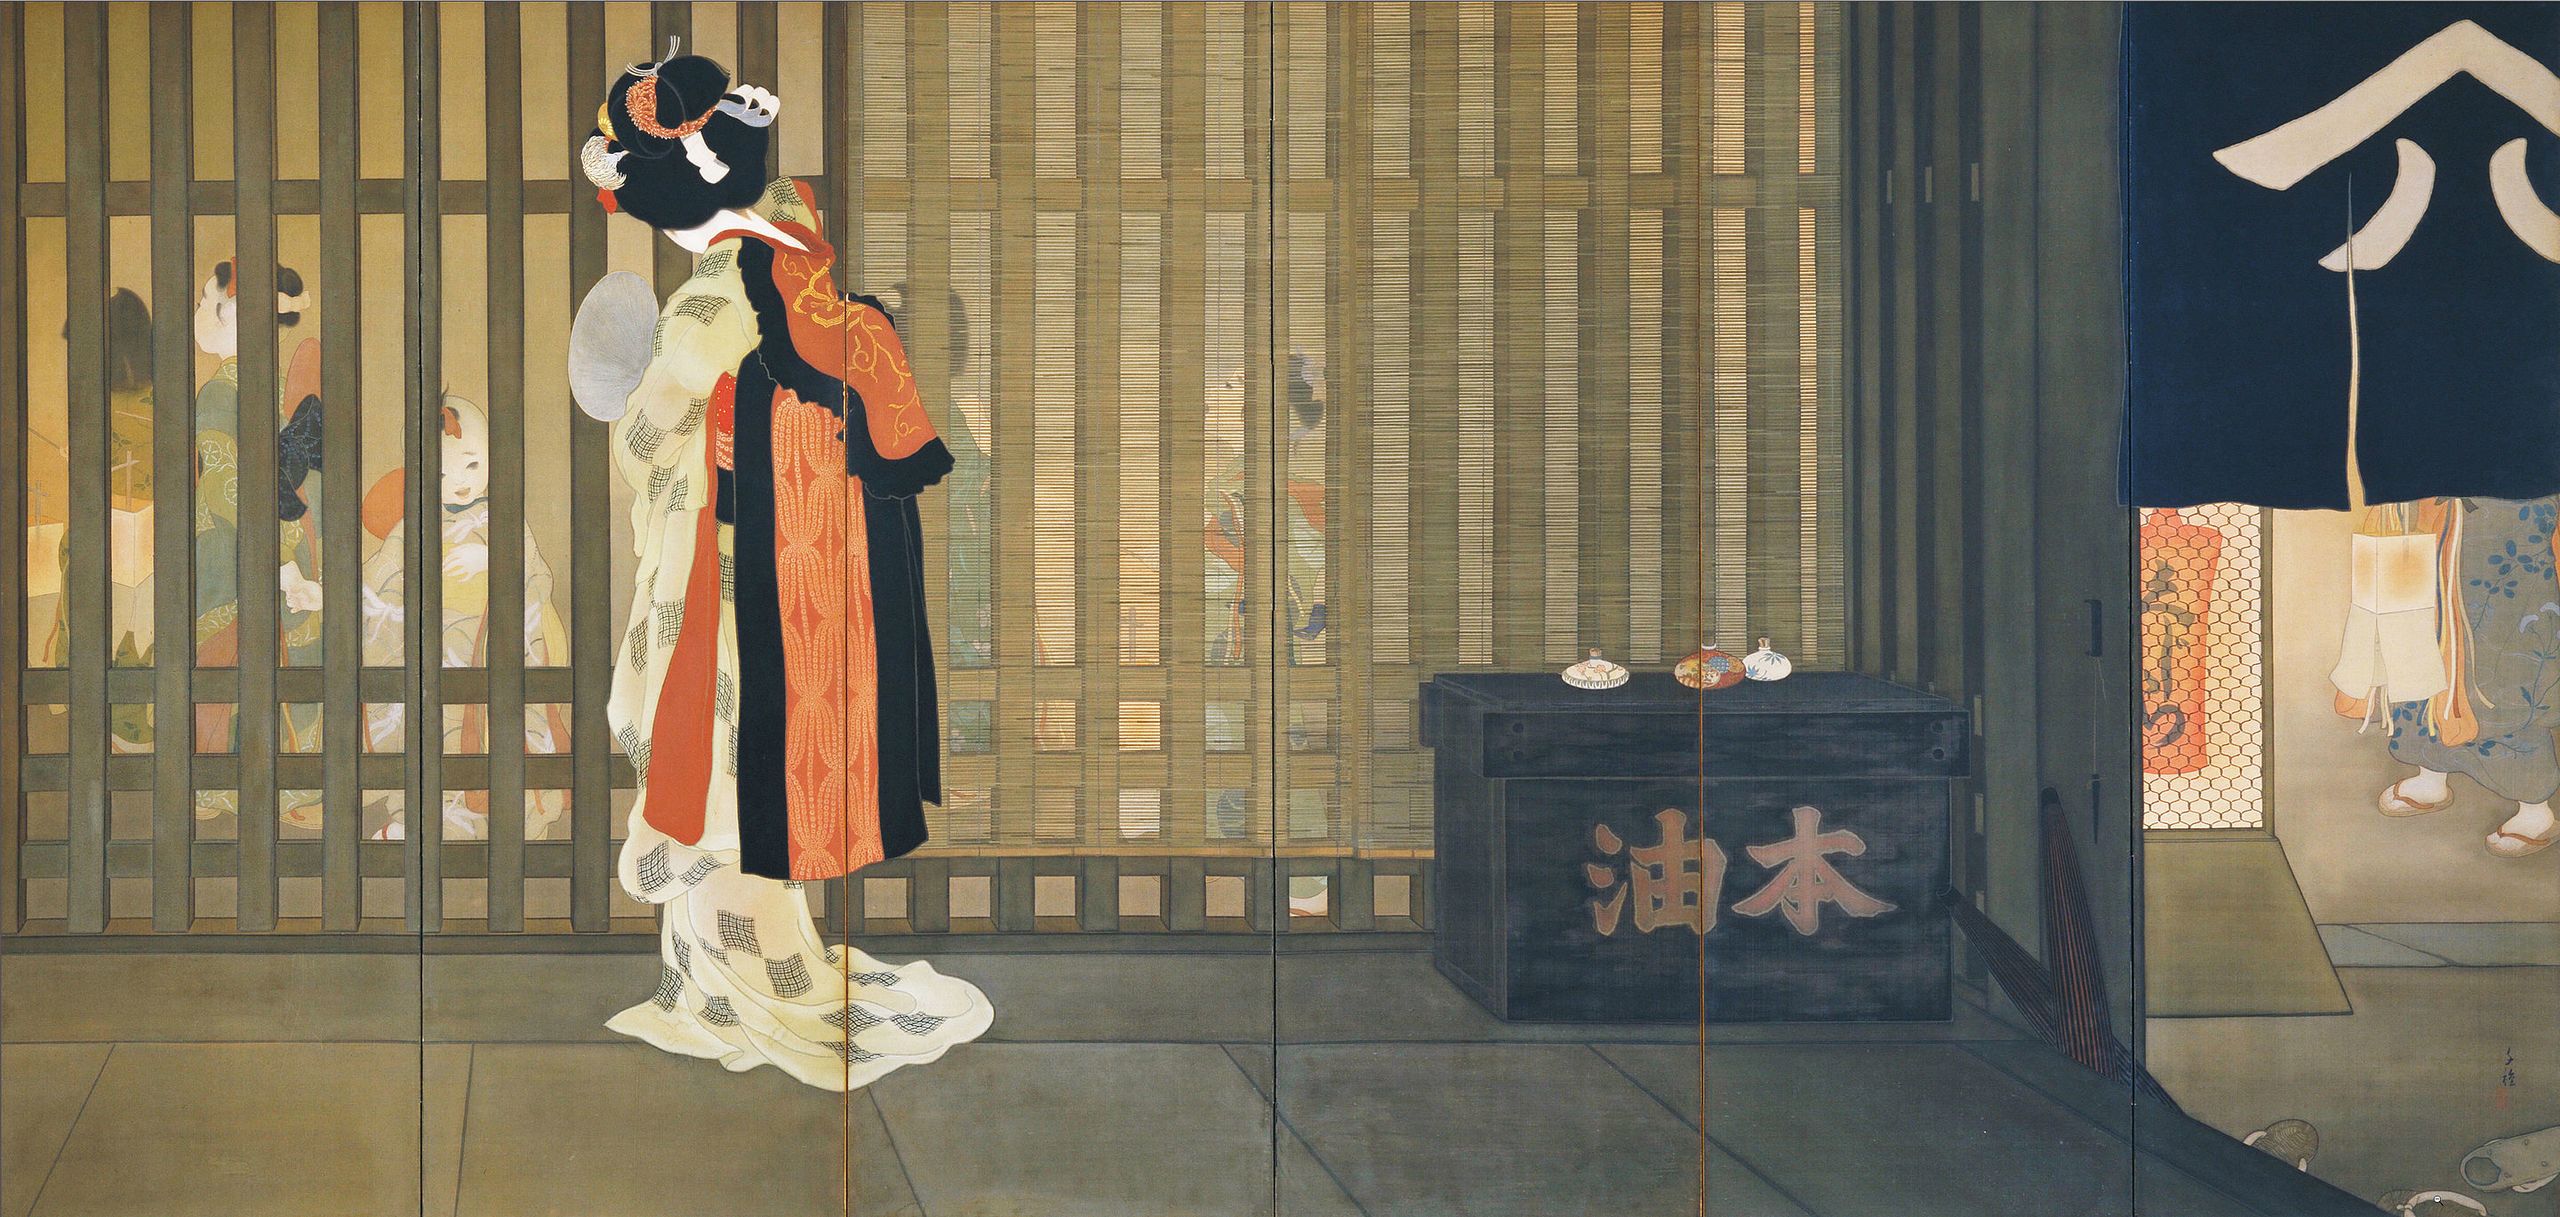 Онґоку by Chigusa Kitani - 1918 - 166 x 342 см 